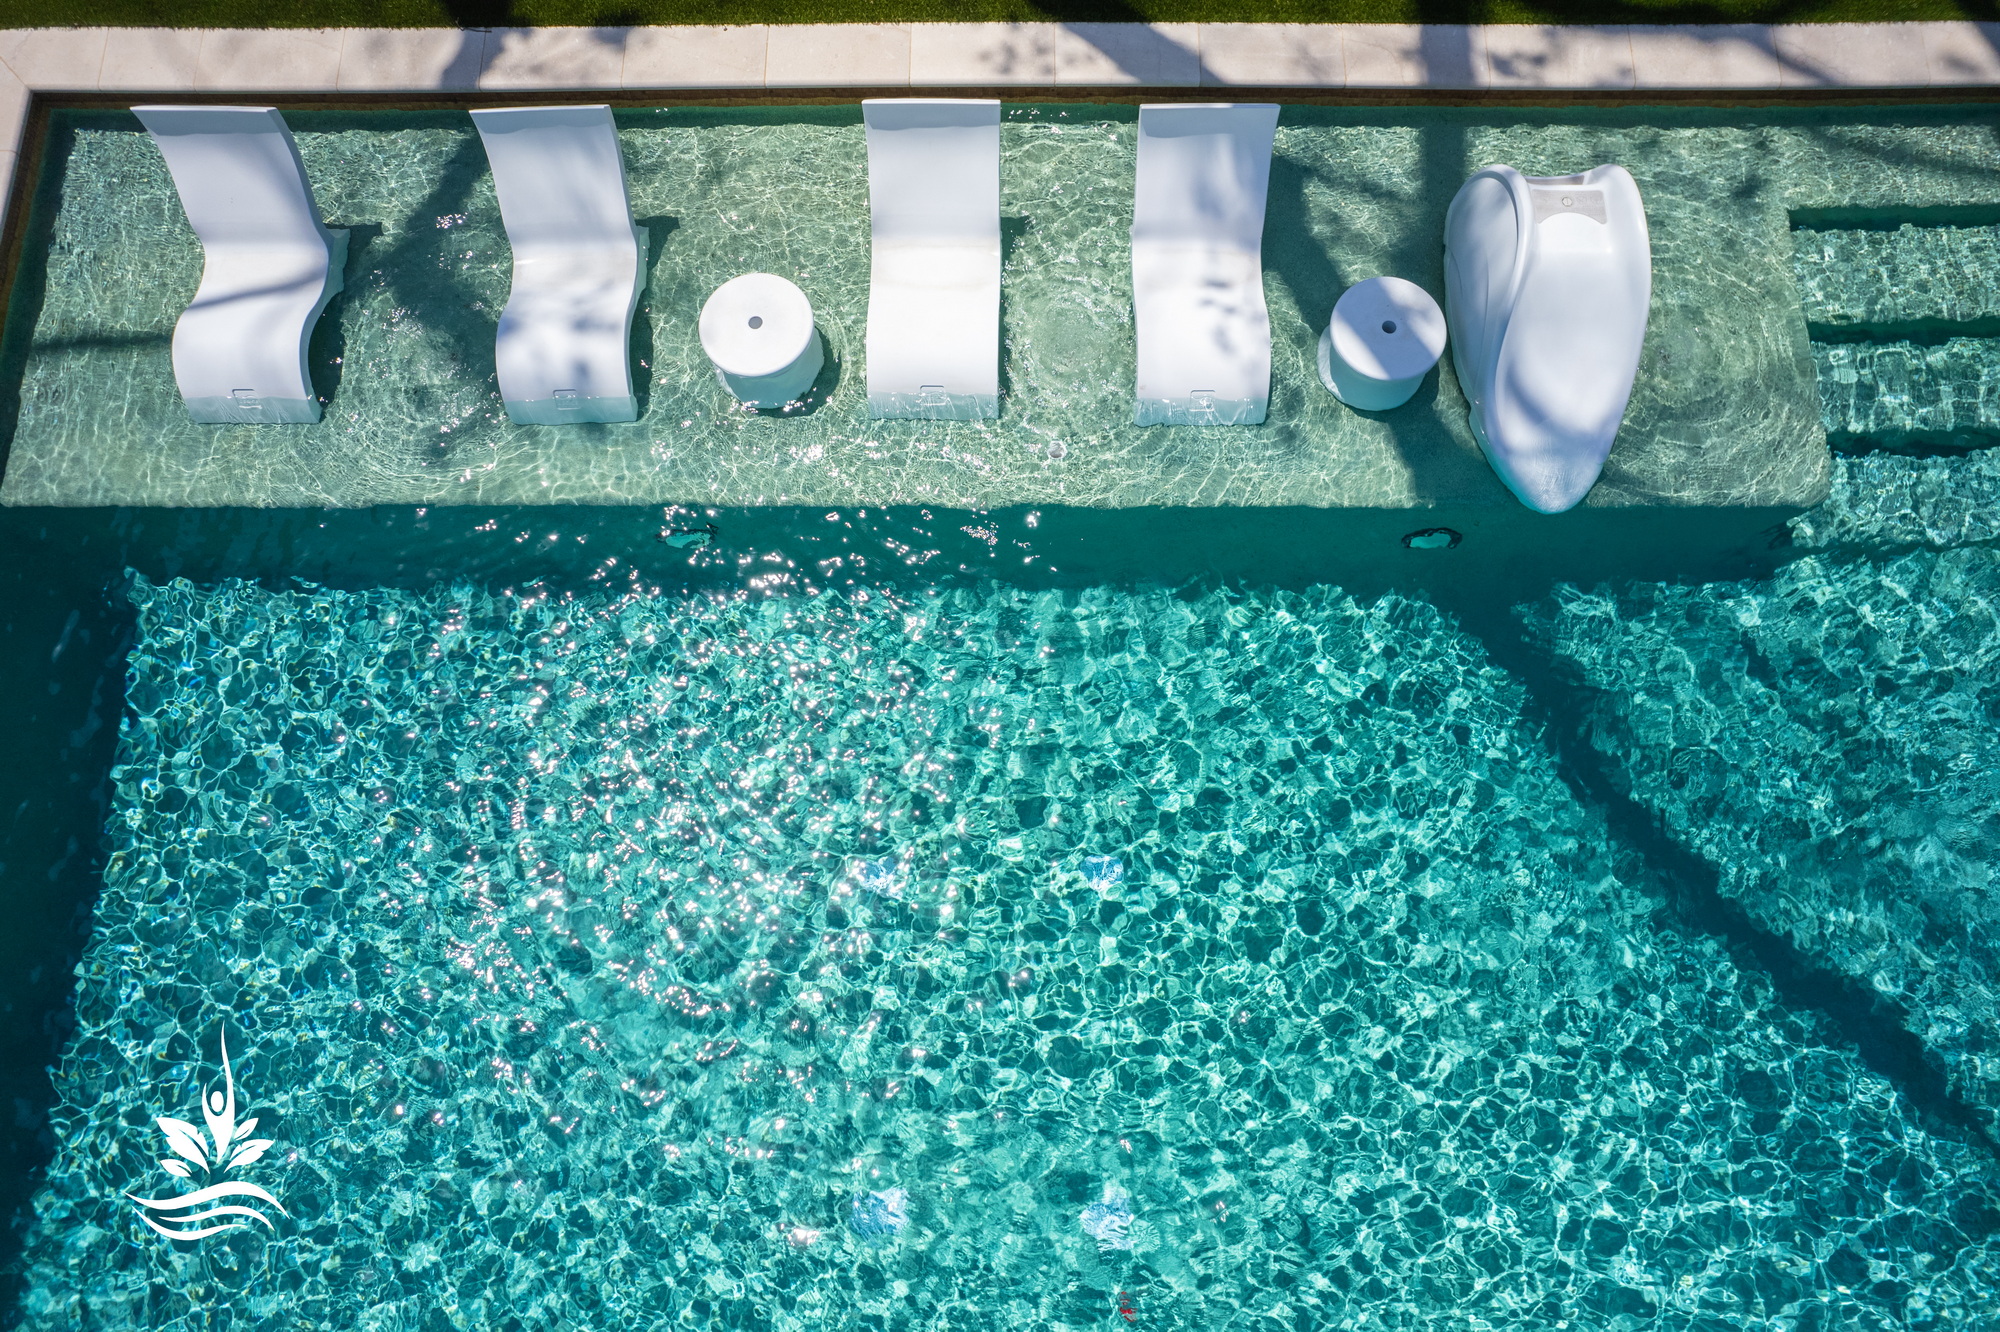 Luxe swimming pool design in Dallas TX